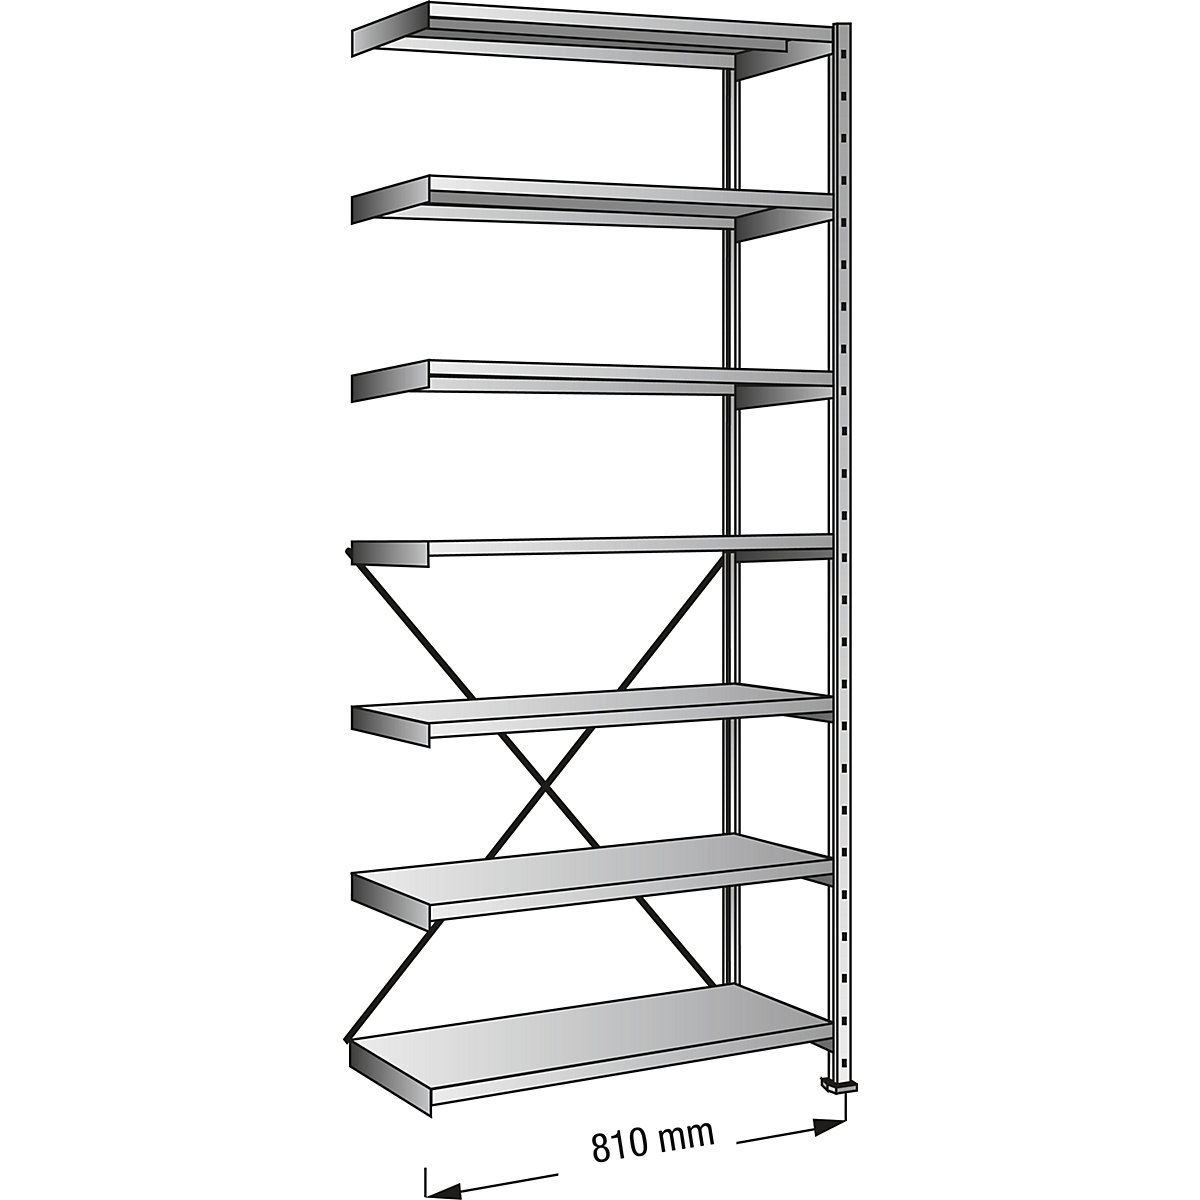 Boltless shelving unit, zinc plated, 7 shelves, height 2640 mm, shelf width 800 mm, depth 300 mm, extension shelf unit